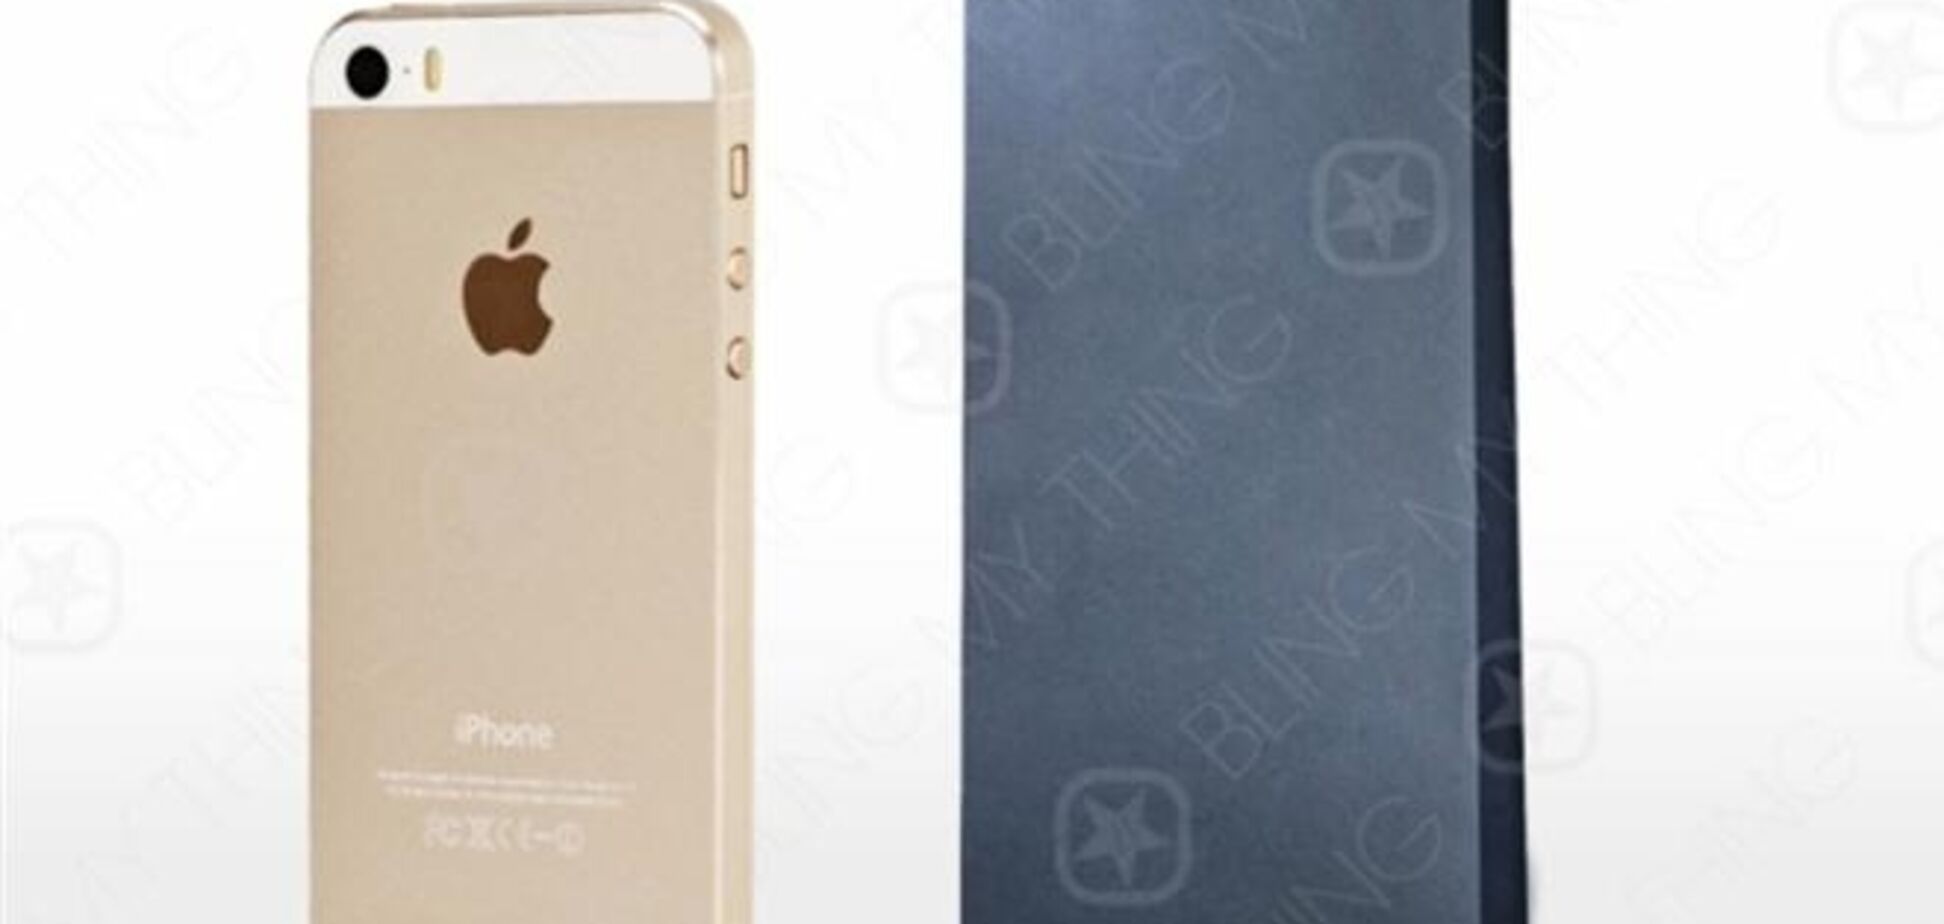 Образец чехла для iPhone 6 свидетельствует о том, что у нового смартфона будет большой экран